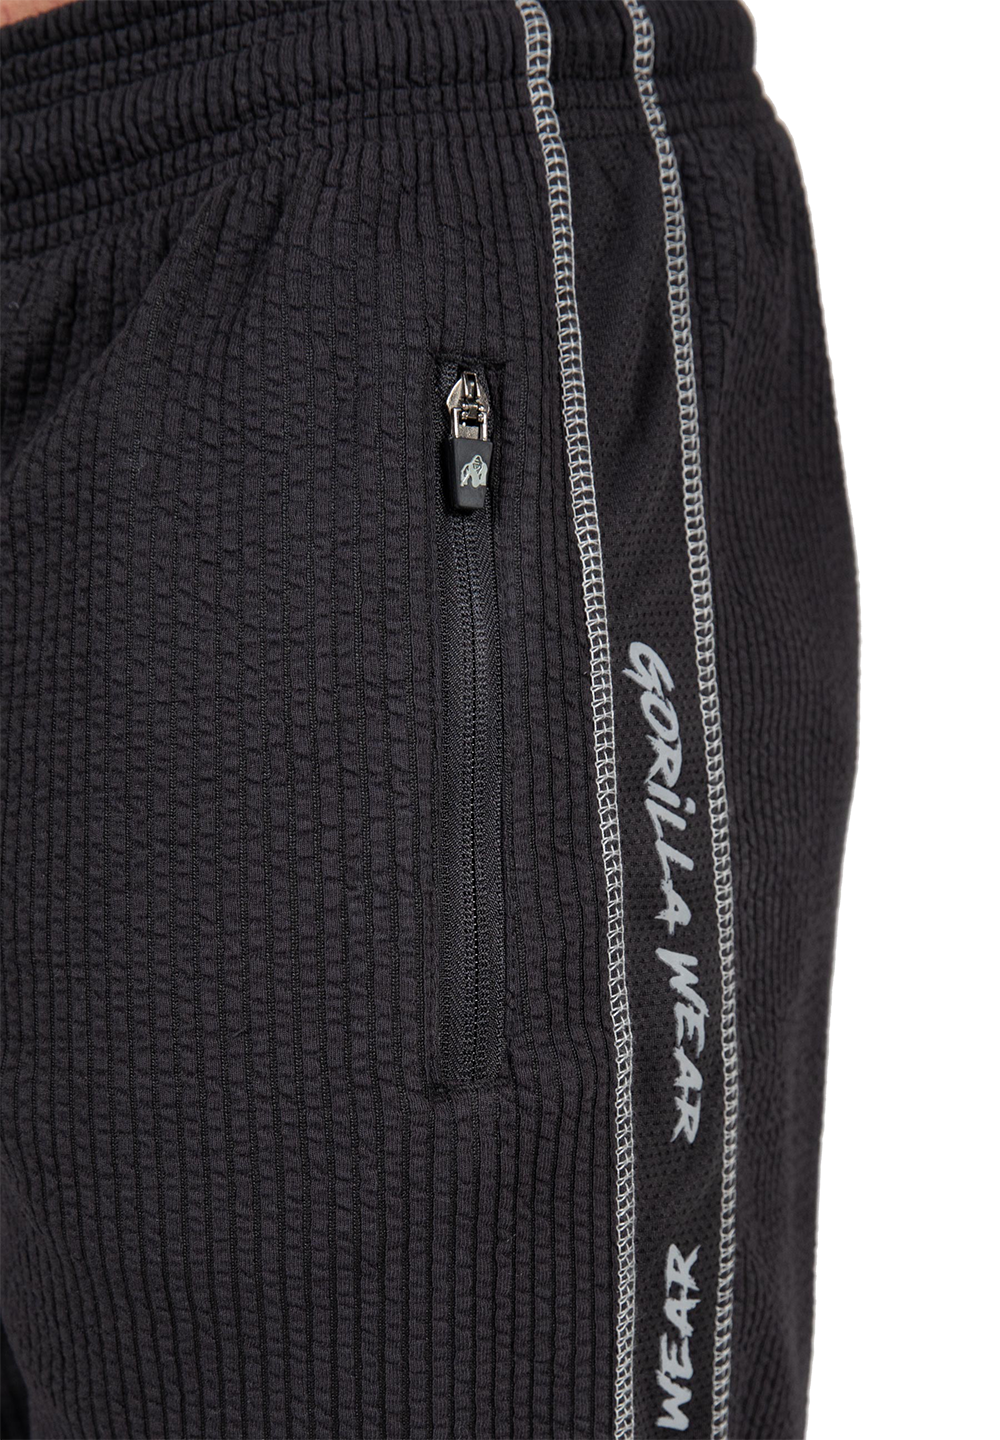 Штаны Buffalo Old School Workout Pants – Black/Gray от Gorilla Wear